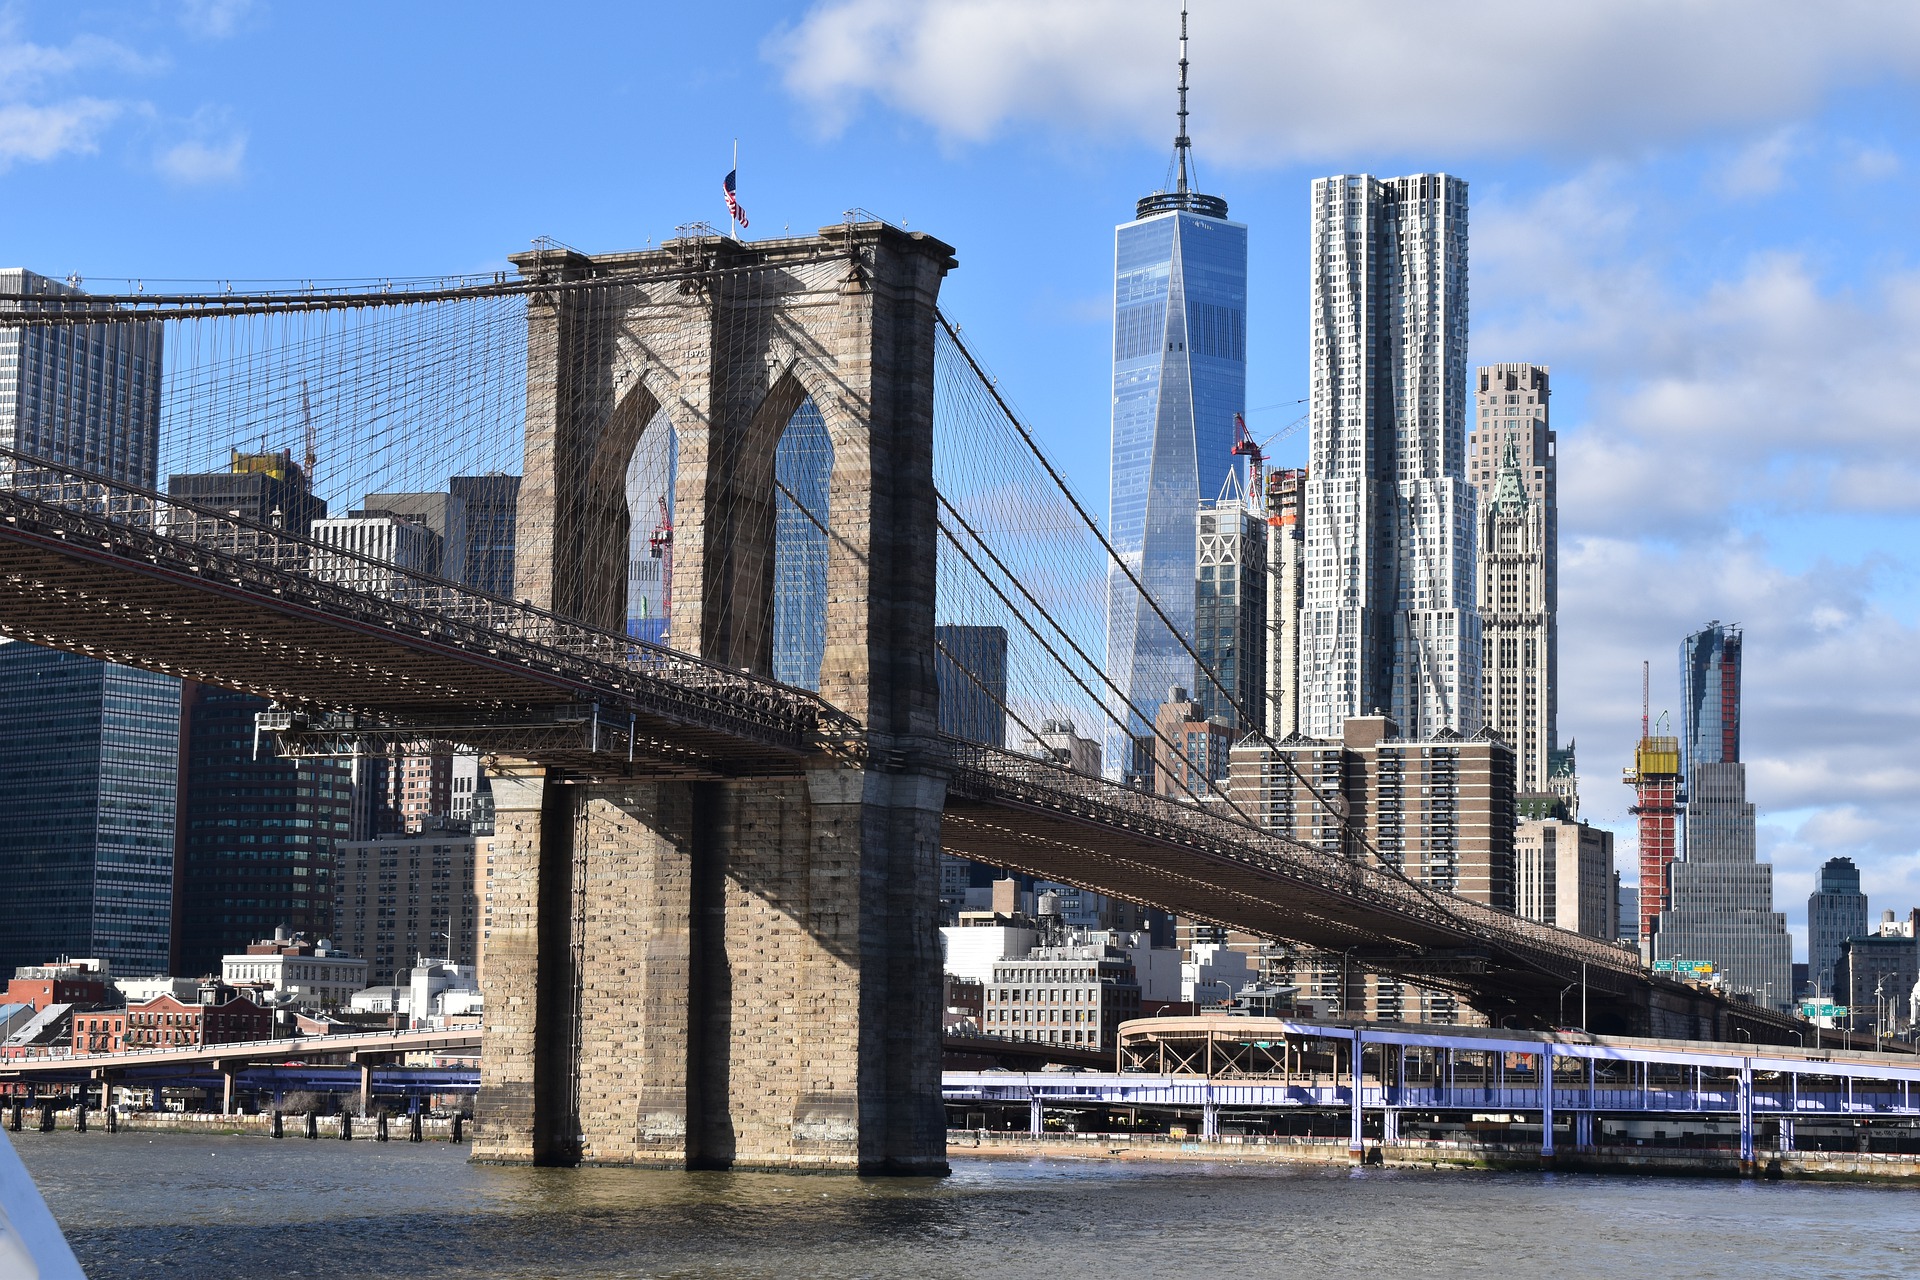 New york what to do. Бруклинский мост Нью-Йорк. “Манхэттен бридж”. Моста в Нью Йорке. Достопримечательности Нью Йорка Бруклинский мост. Бруклинский мост Бруклин и Манхэттен.